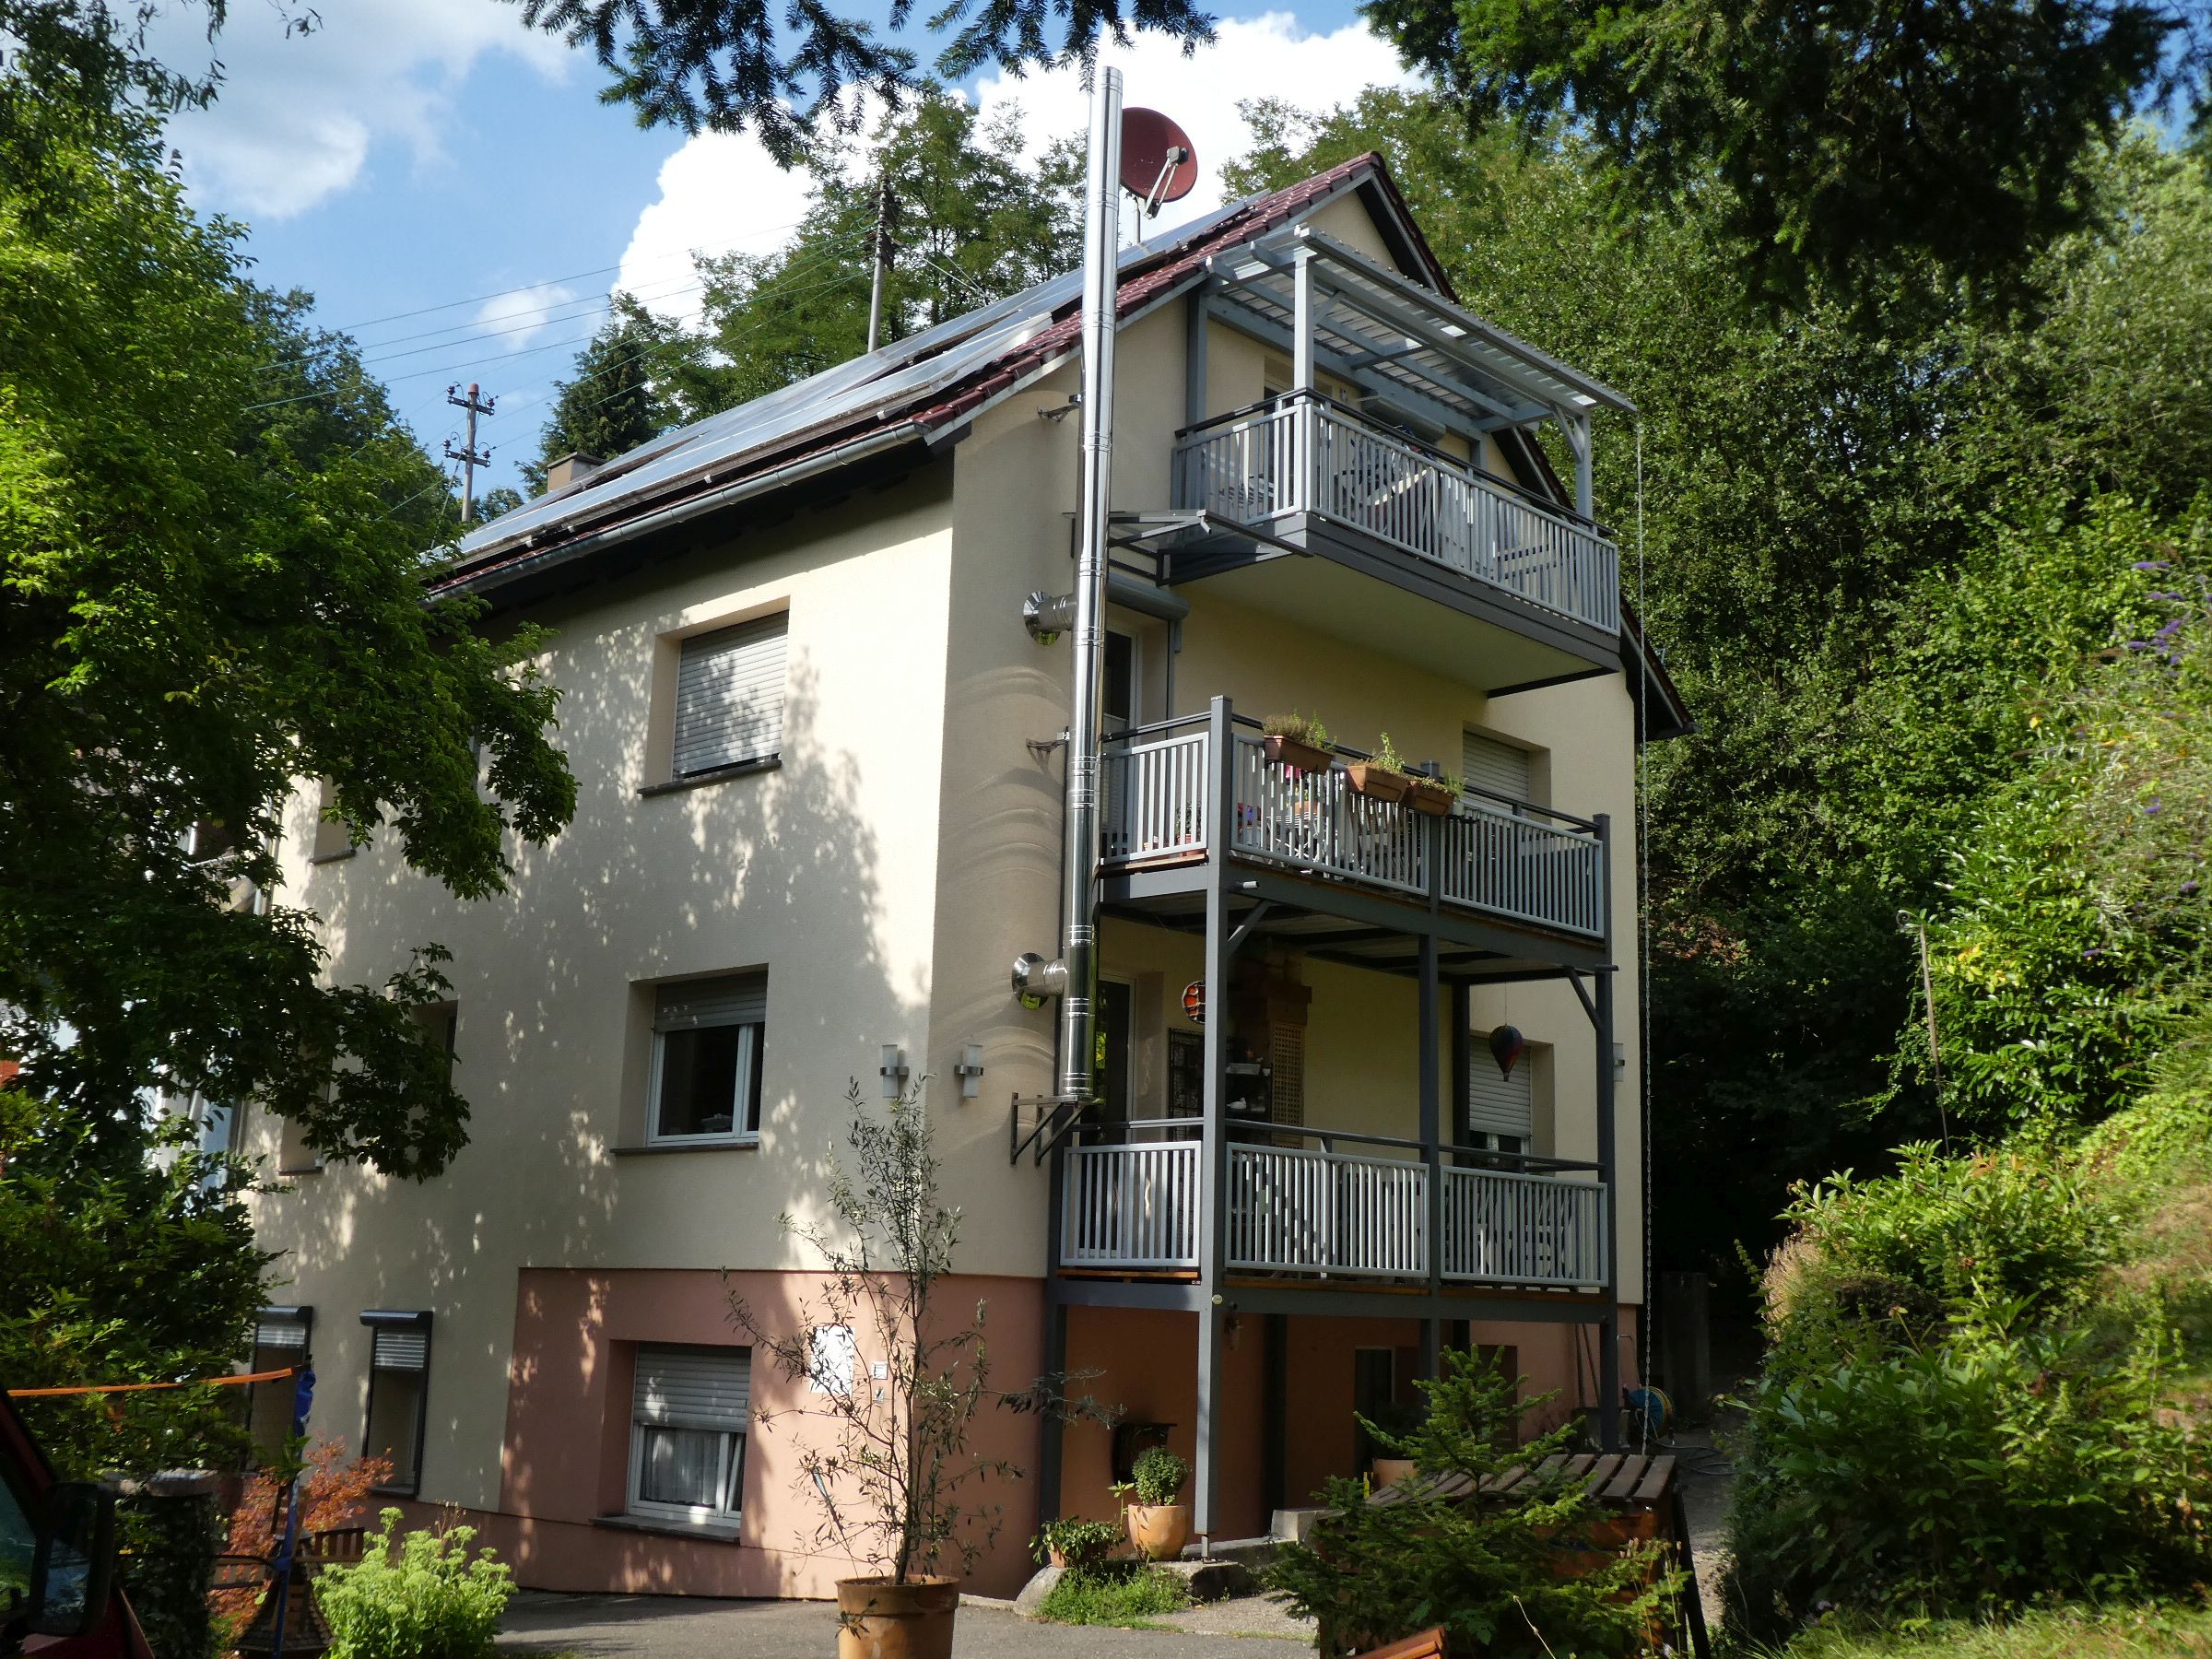 
    
            
                    Energetisch auf Vordermann gebracht - nahezu alle Bauteile der Gebäudehülle dieses Zweifamilienhauses in Heidelberg wurden modernisiert und die Heizungsanlage erneuert.
                
        
